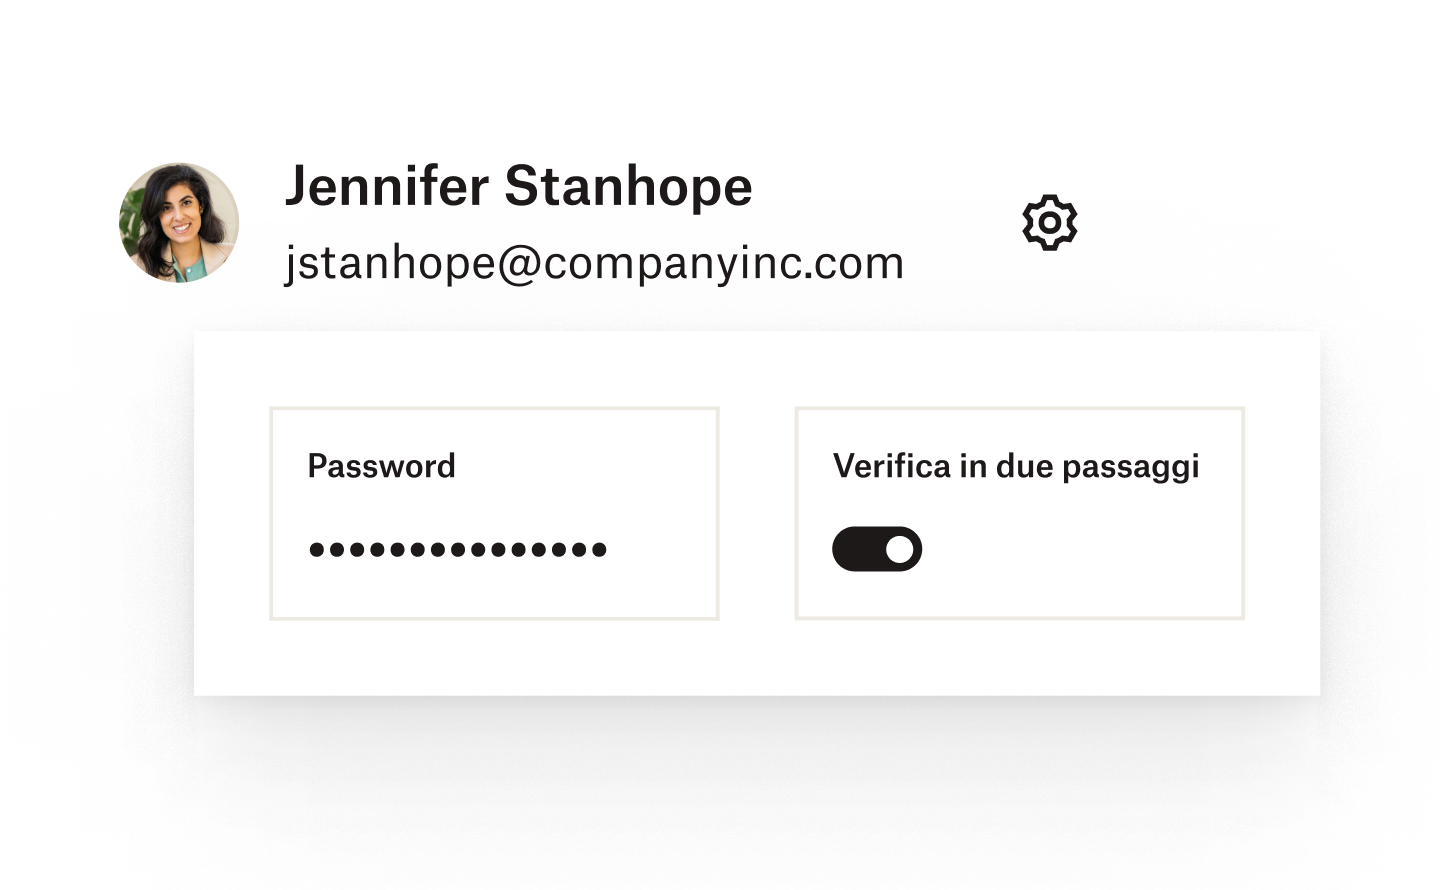 Una password e un'impostazione di verifica in due passaggi aggiunte a un account utente